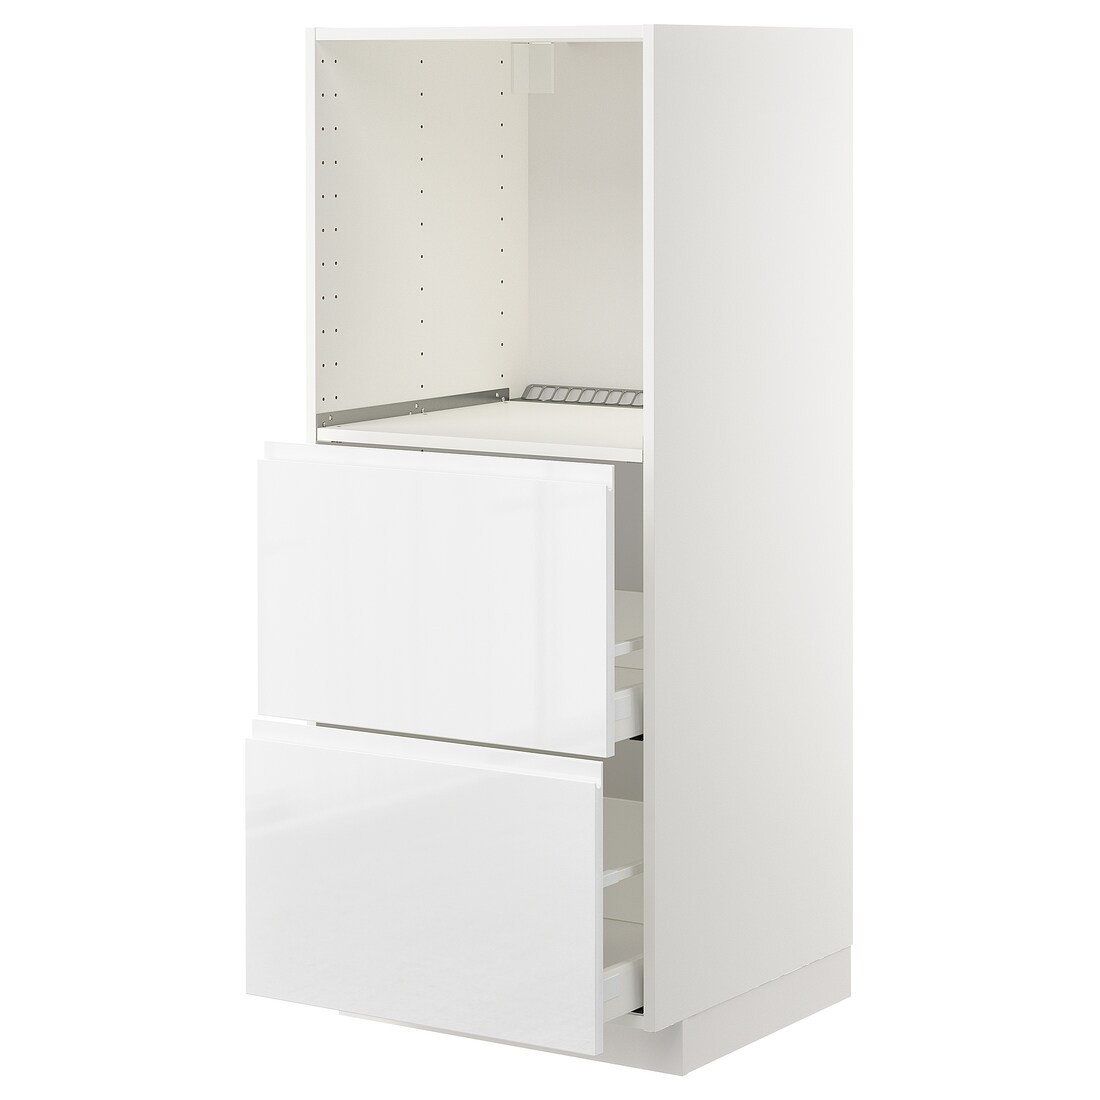 IKEA METOD МЕТОД / MAXIMERA МАКСИМЕРА Высокий шкаф с 2 ящиками для духовки, белый / Voxtorp глянцевый / белый, 60x60x140 см 59254066 592.540.66